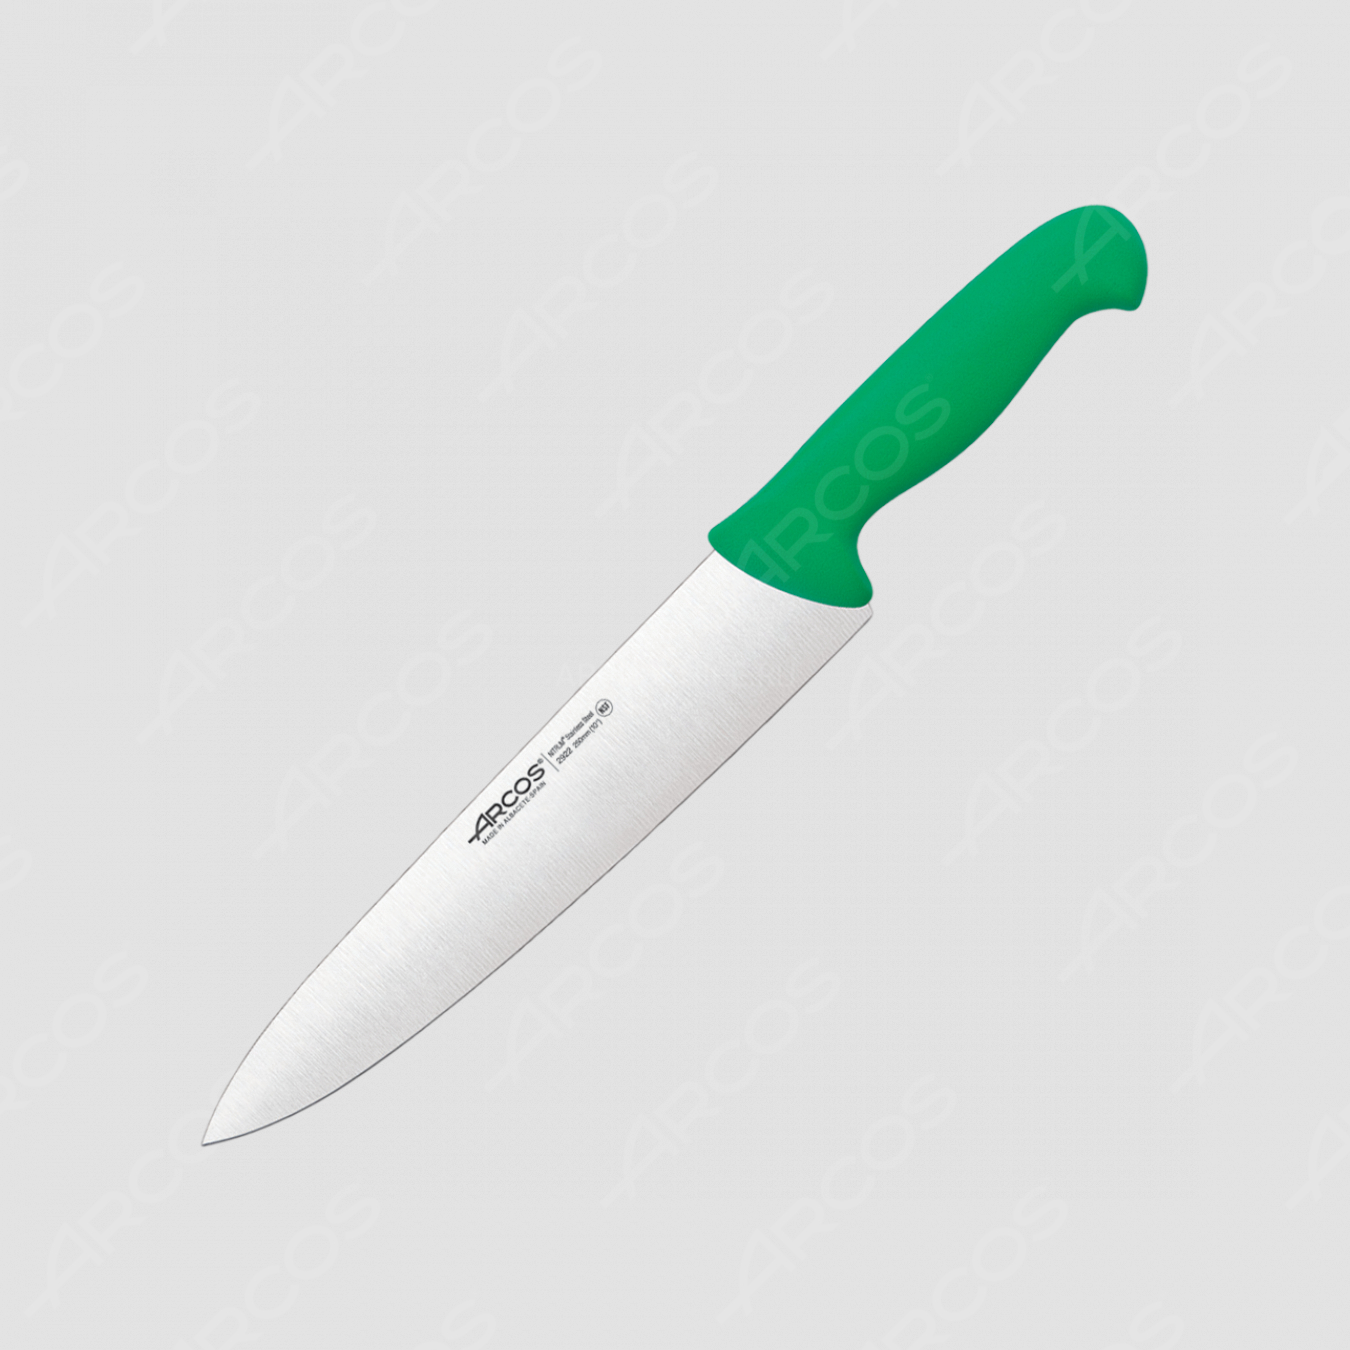 Профессиональный поварской кухонный нож 25 см, рукоять зеленая, серия 2900, ARCOS, Испания